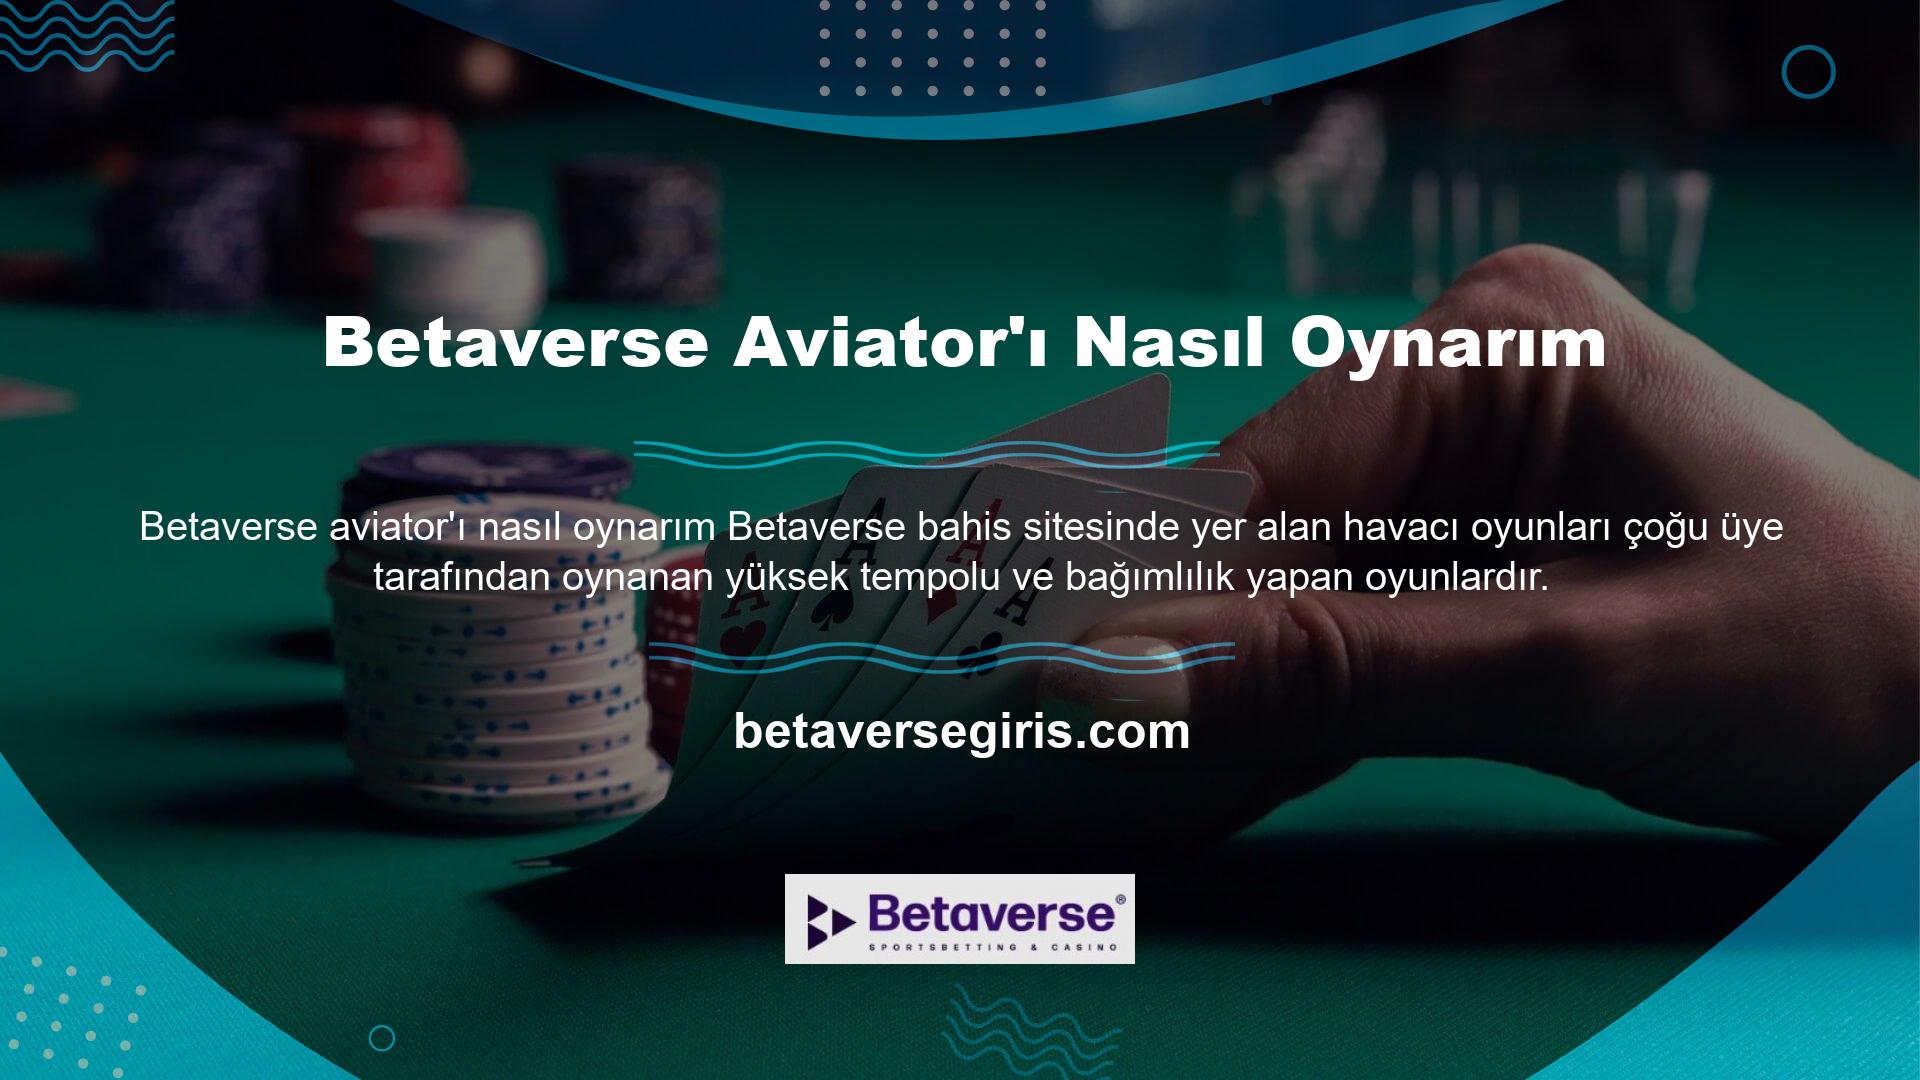 Betaverse Aviator'ı Nasıl Oynarım